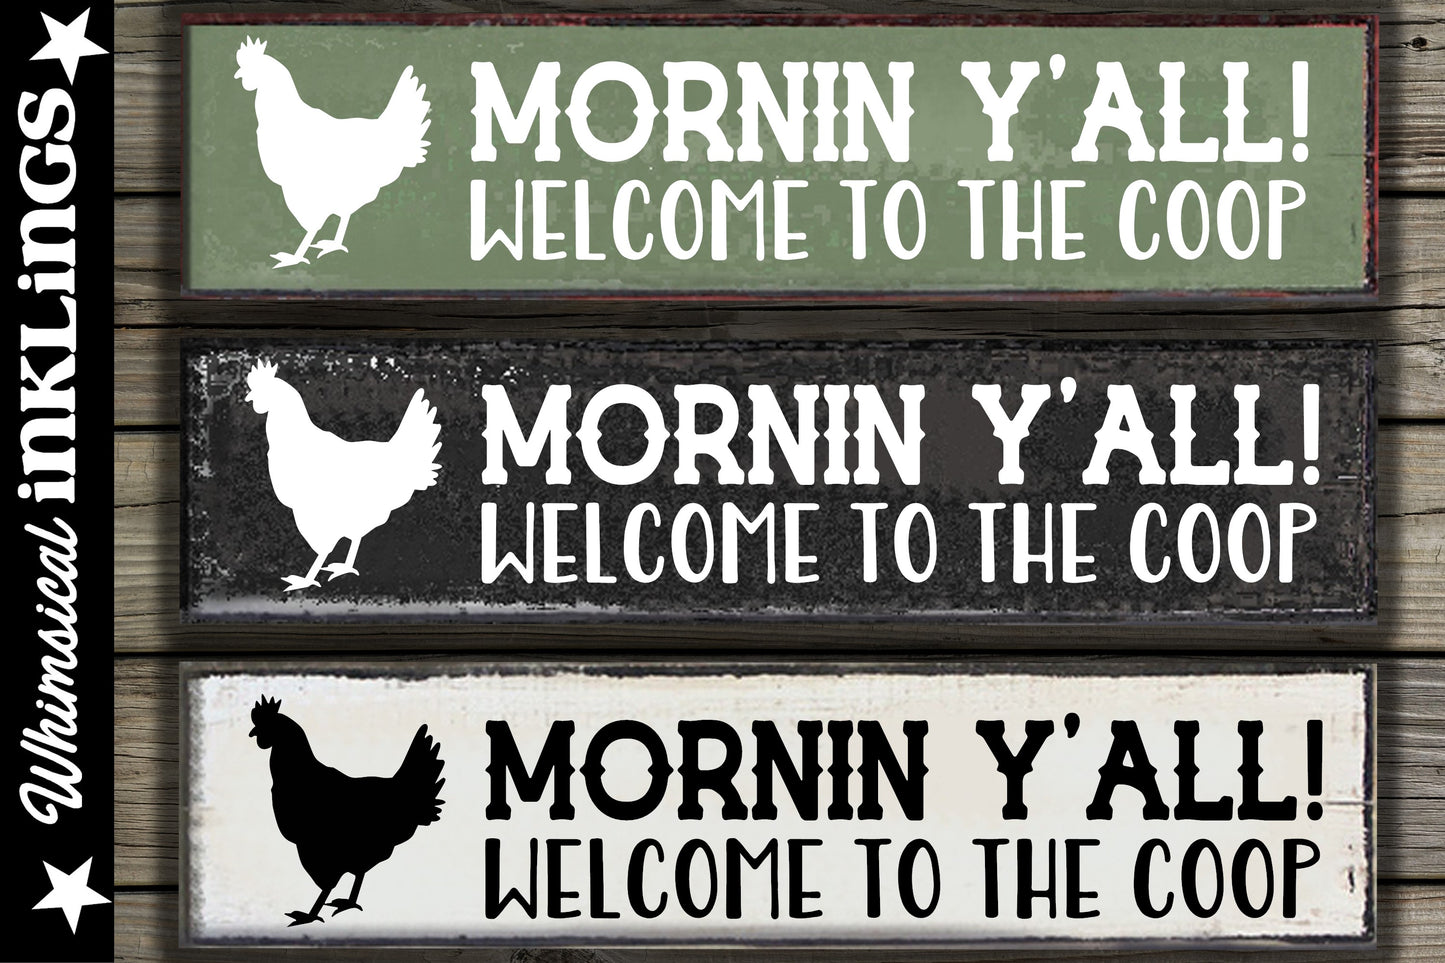 Mornin Y'All Chicken Coop Sign SVG| Farm SVG